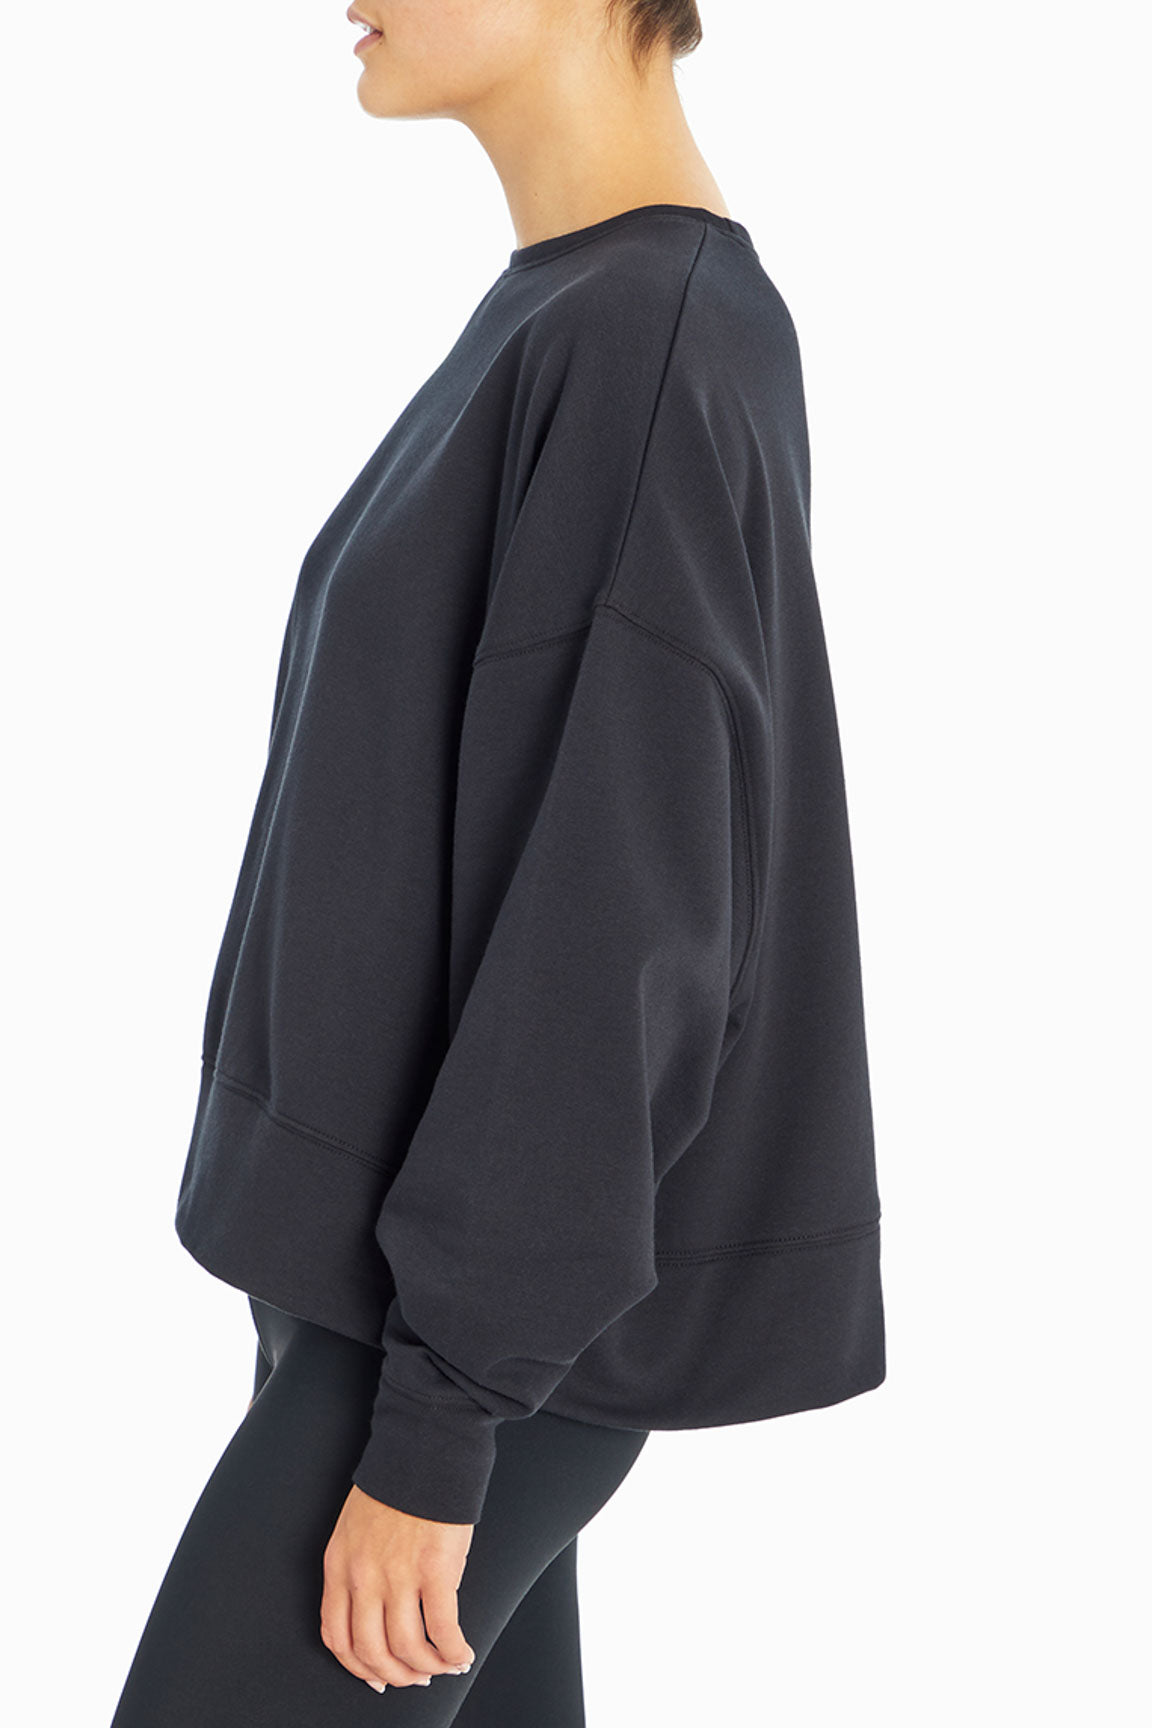 Alondra Fleece Pullover (Black)